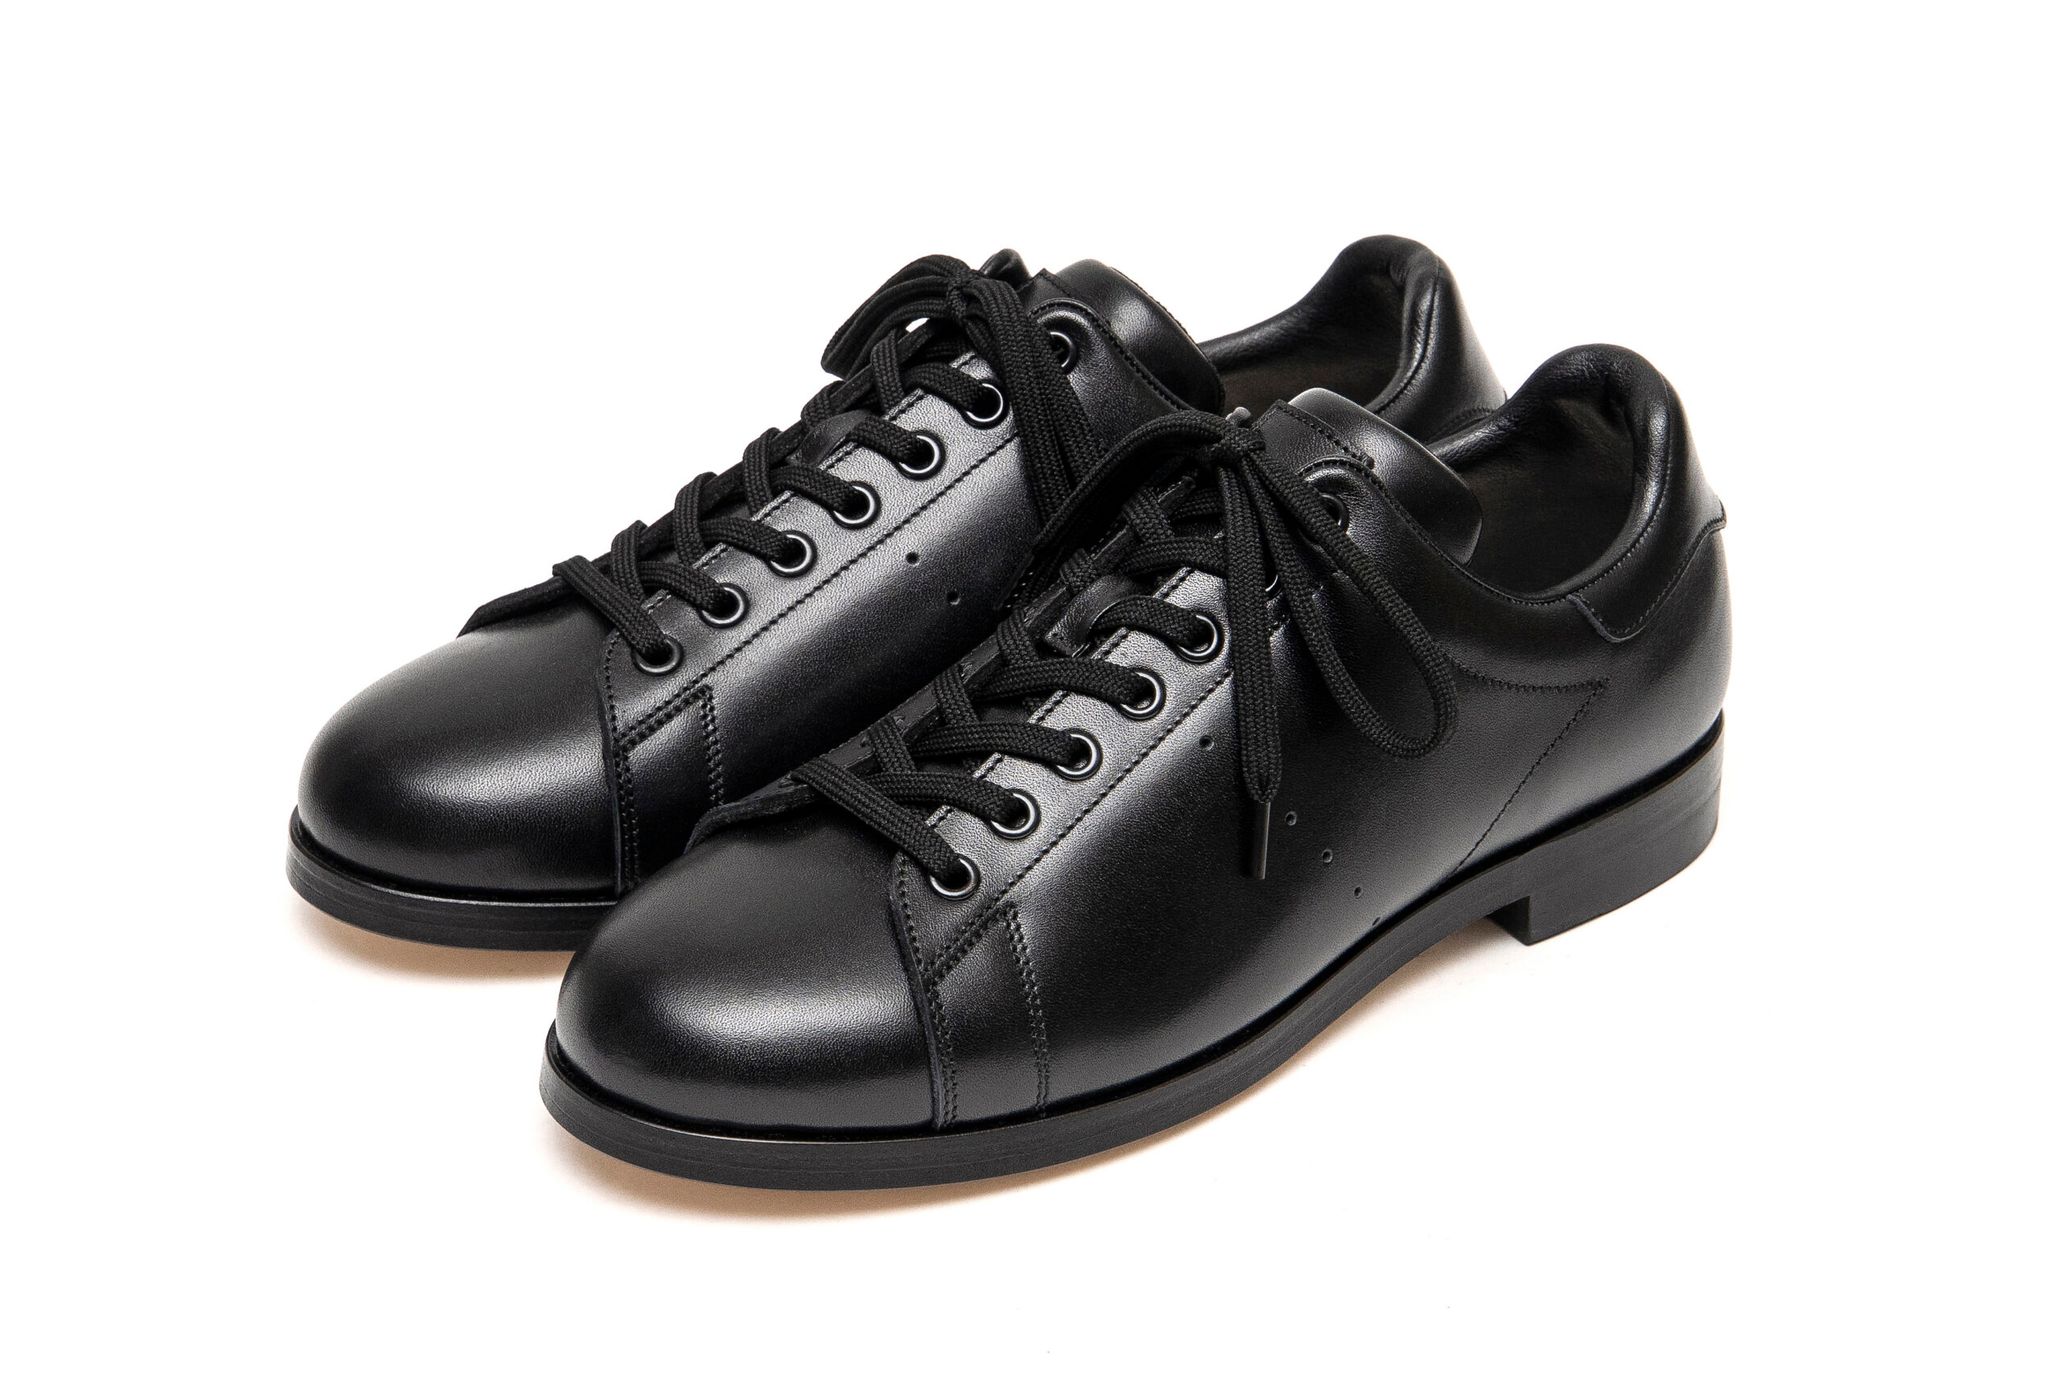 フット・ザ・コーチャー」からスニーカーのような革靴が登場 - TOKION